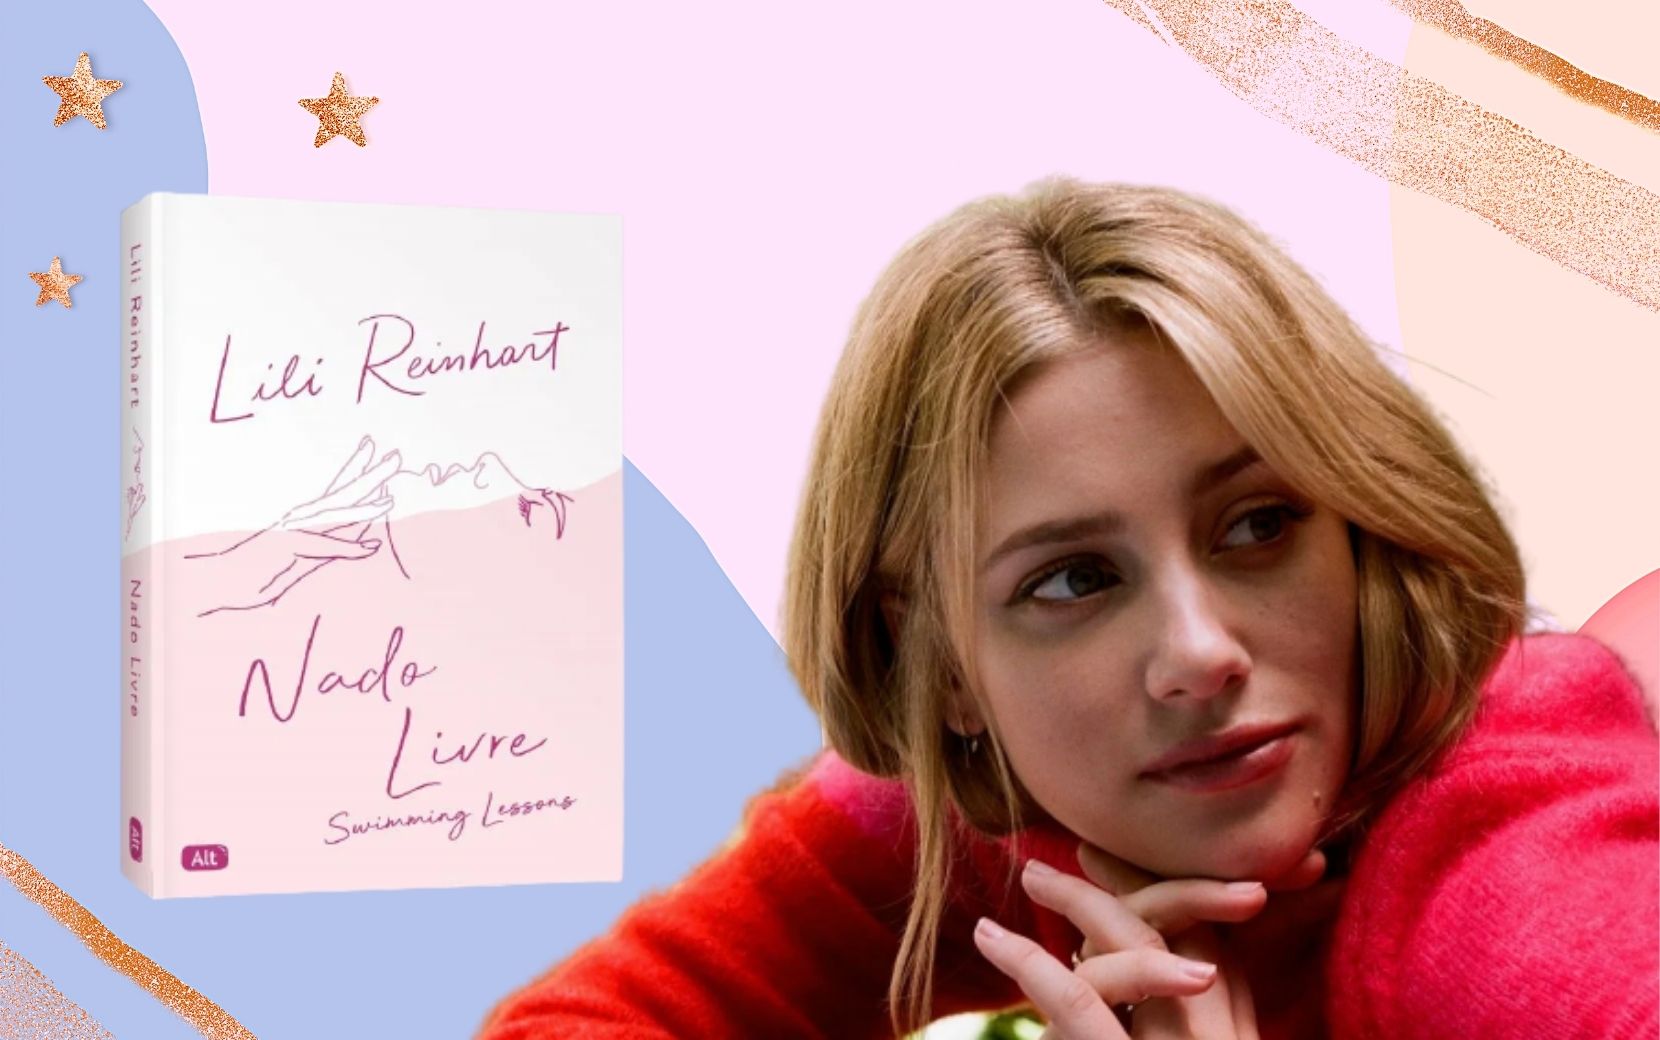 "Nado Livre": tudo sobre o novo livro de Lili Reinhart, atriz de "Riverdale"